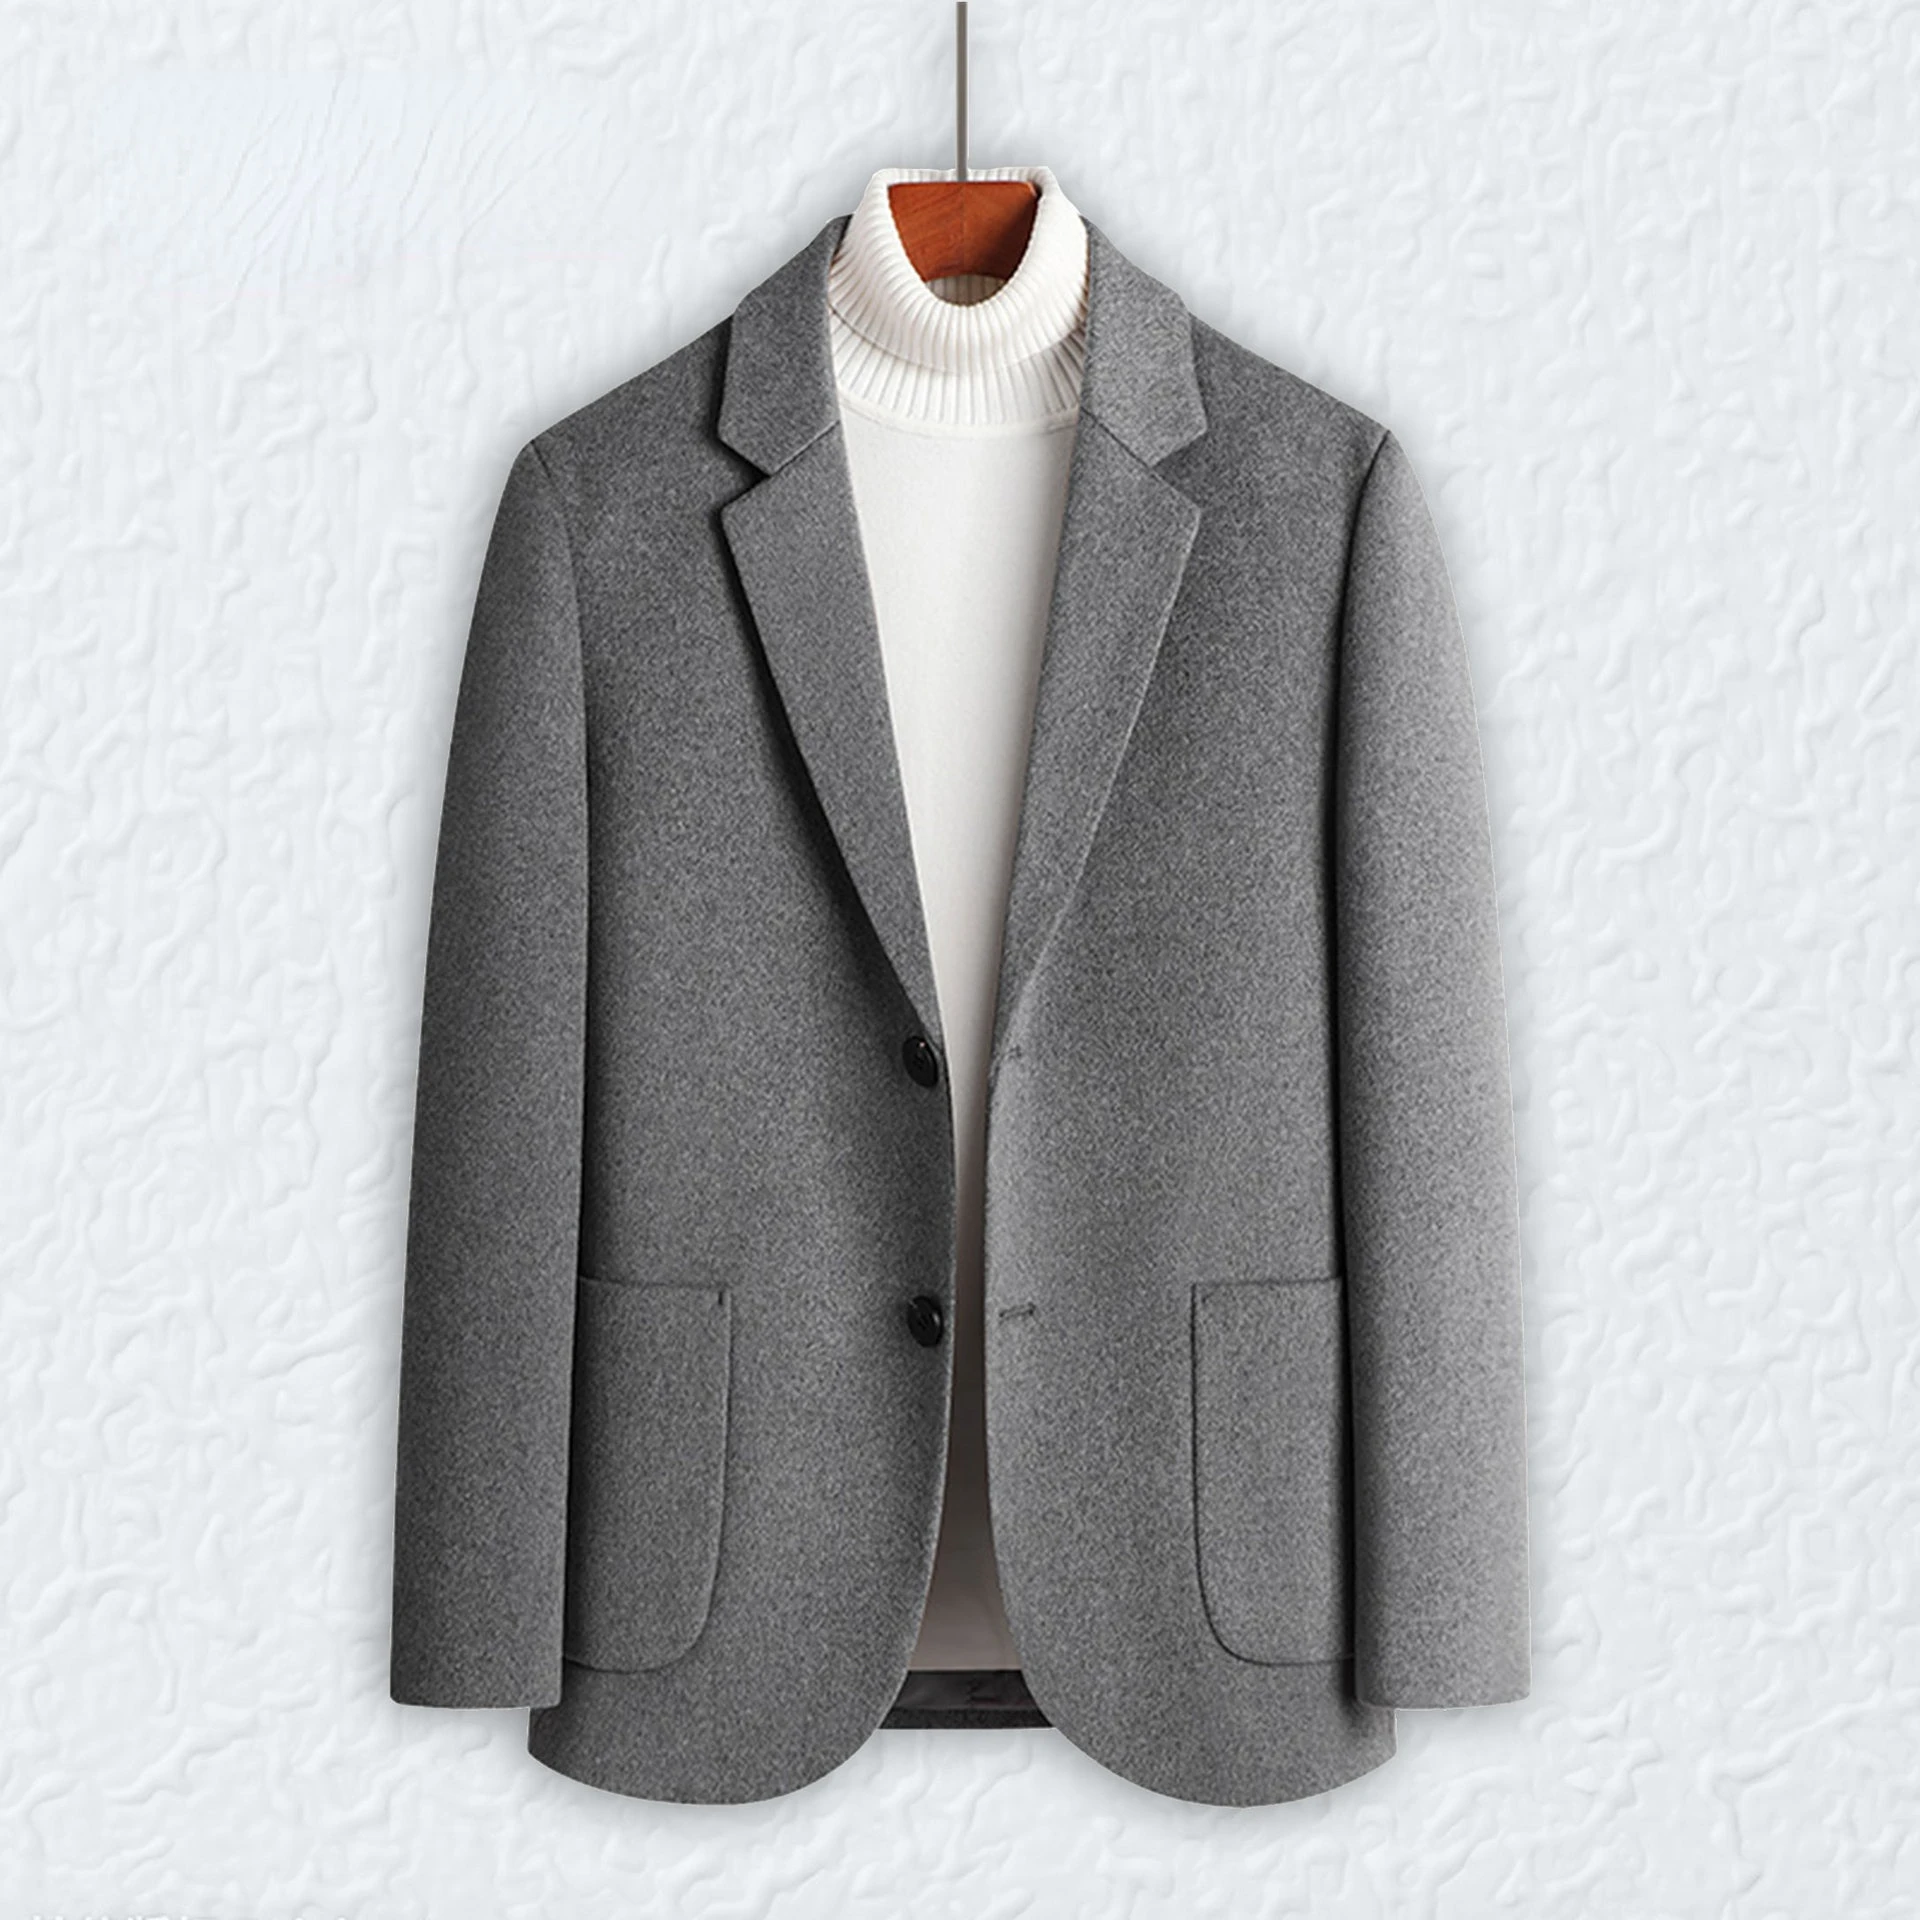 Man Grey Wool Suit Spring Autumn Solid Color Casual Woolen Mens Business Suit Coat Button Up Suit Blazer Jacket Oversize Xxxl